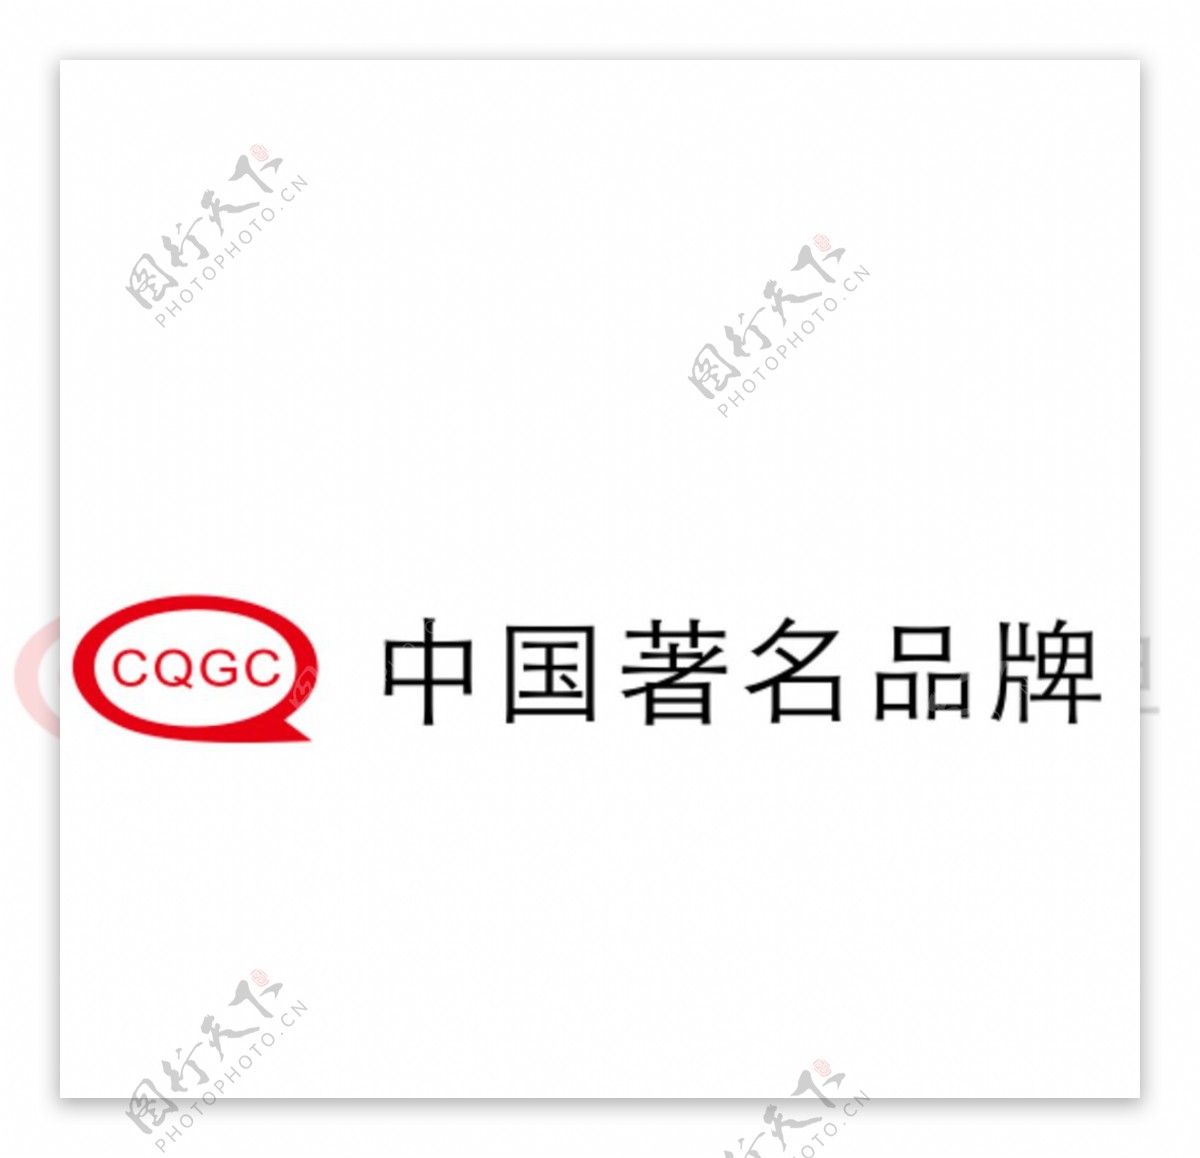 CQGC中国著名品牌